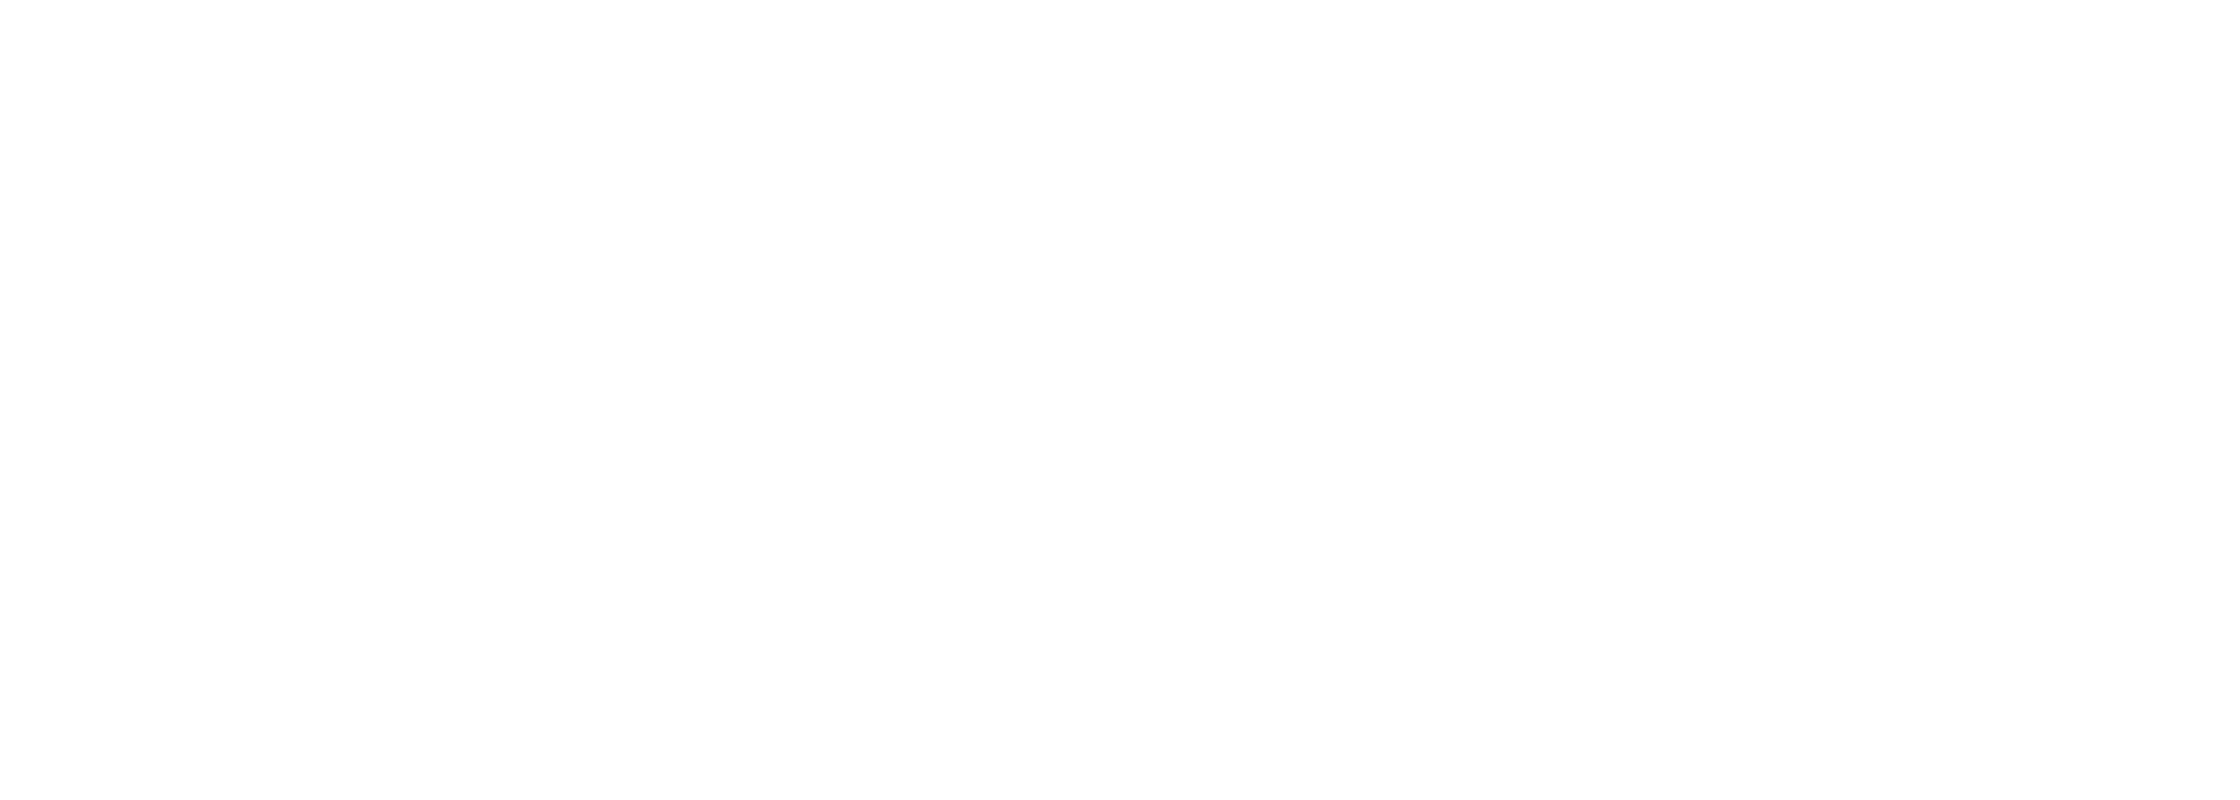 Banner Wir sind im MainEcho - Auf der Webseite www.aschaffenbuch.de